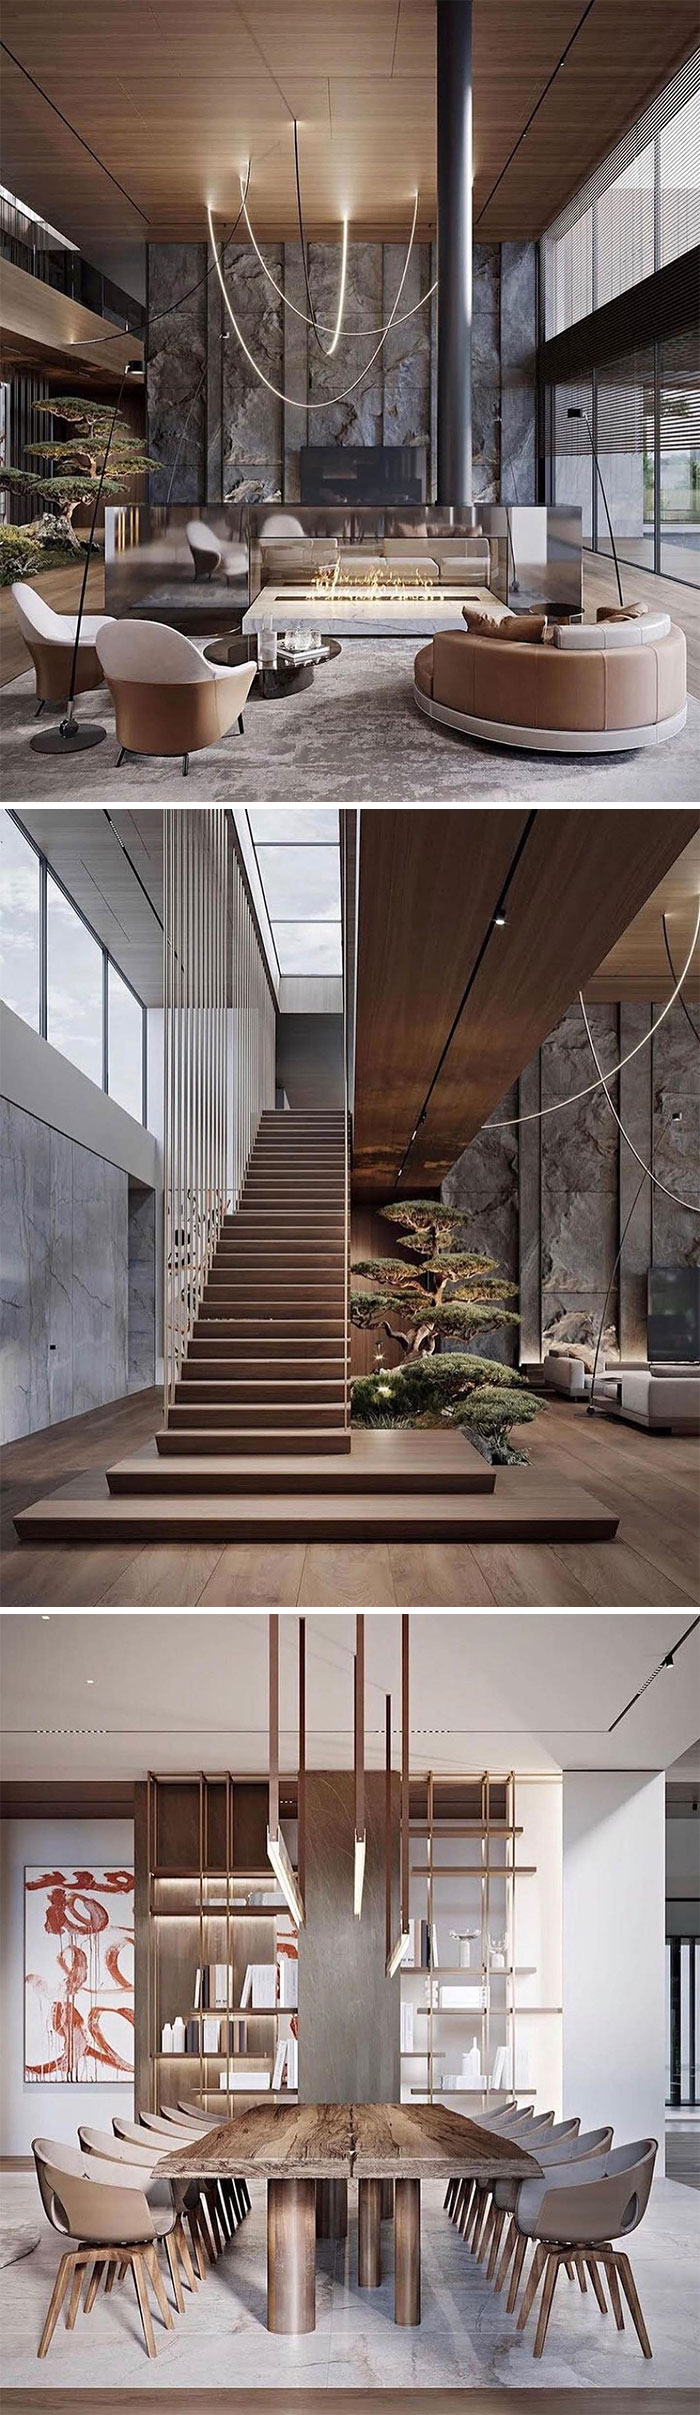 Interior Design By Yodezeen Architects